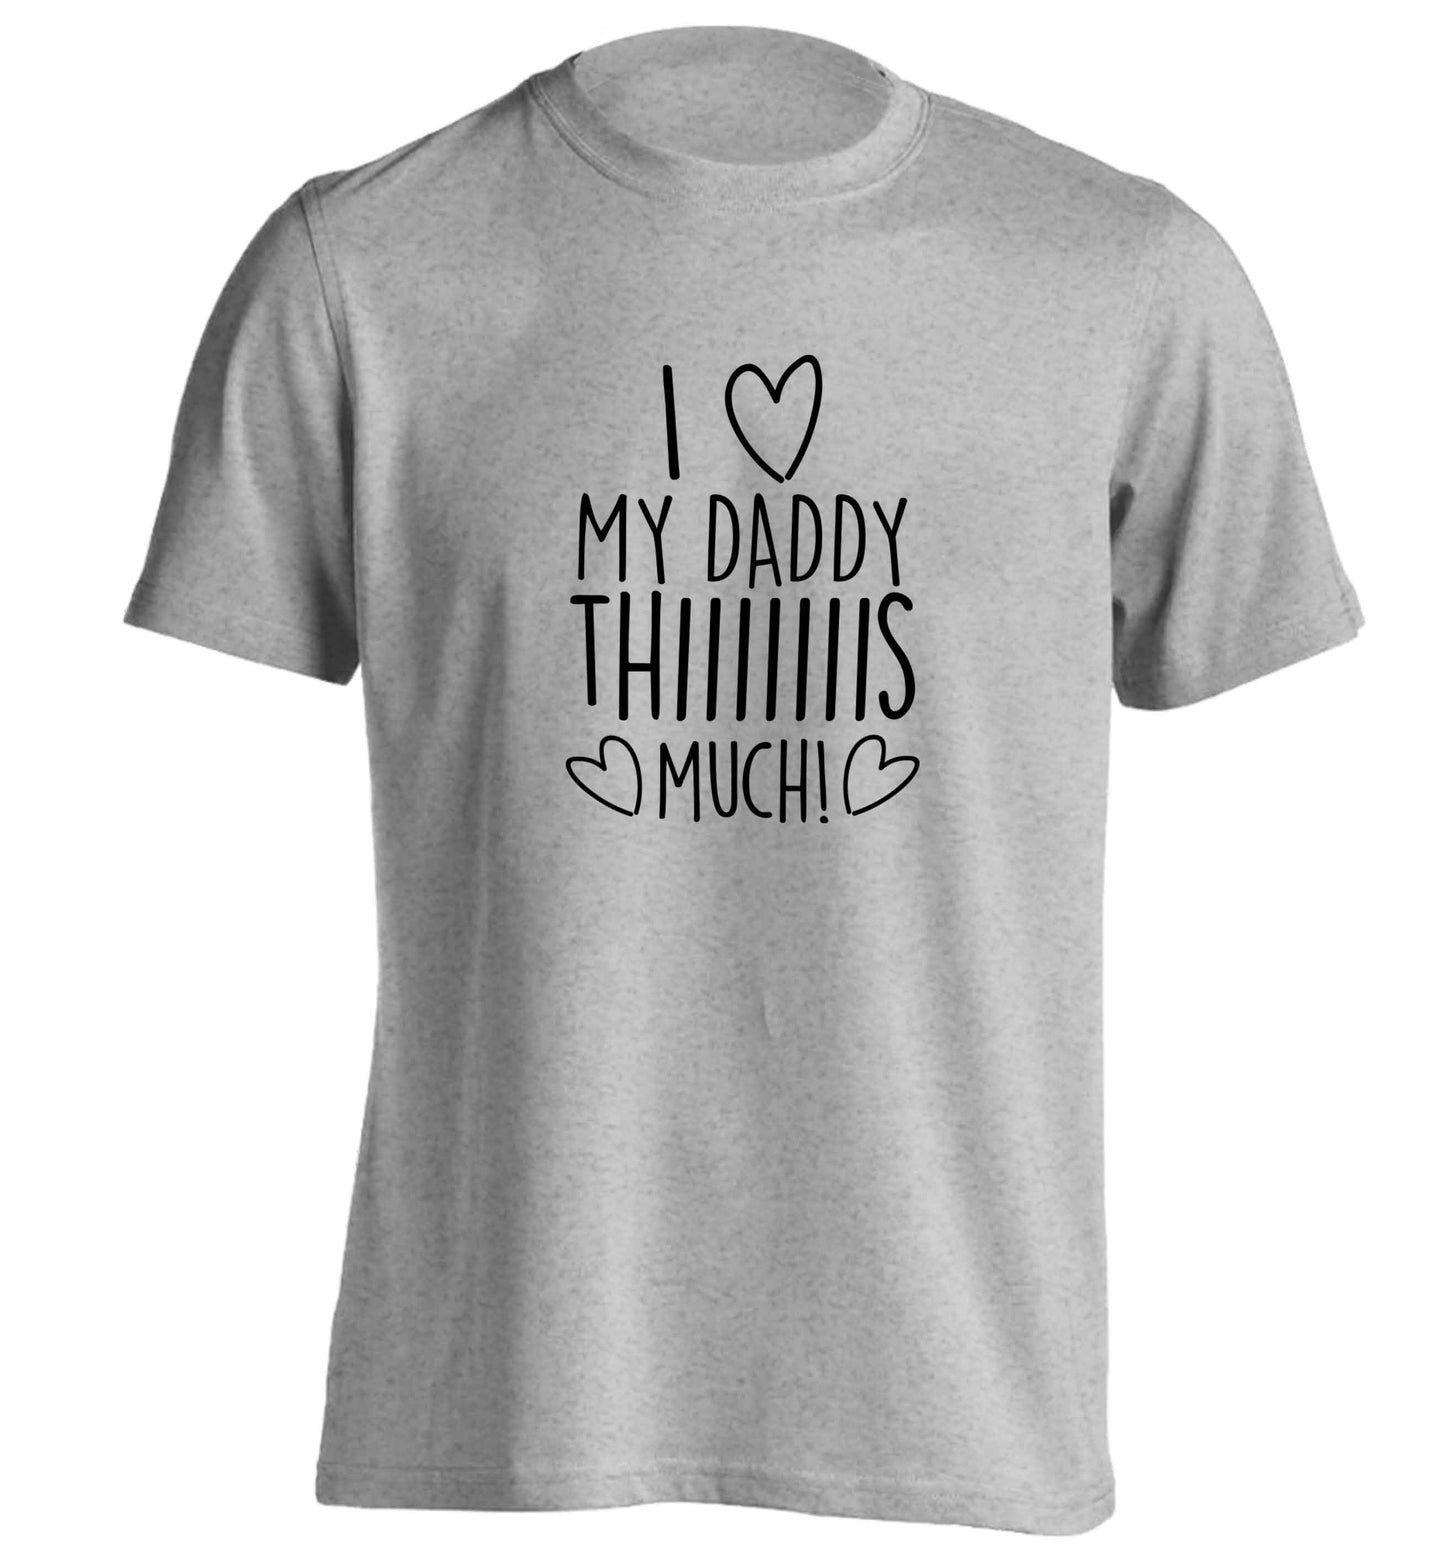 I love my daddy thiiiiis much! adults unisex grey Tshirt 2XL